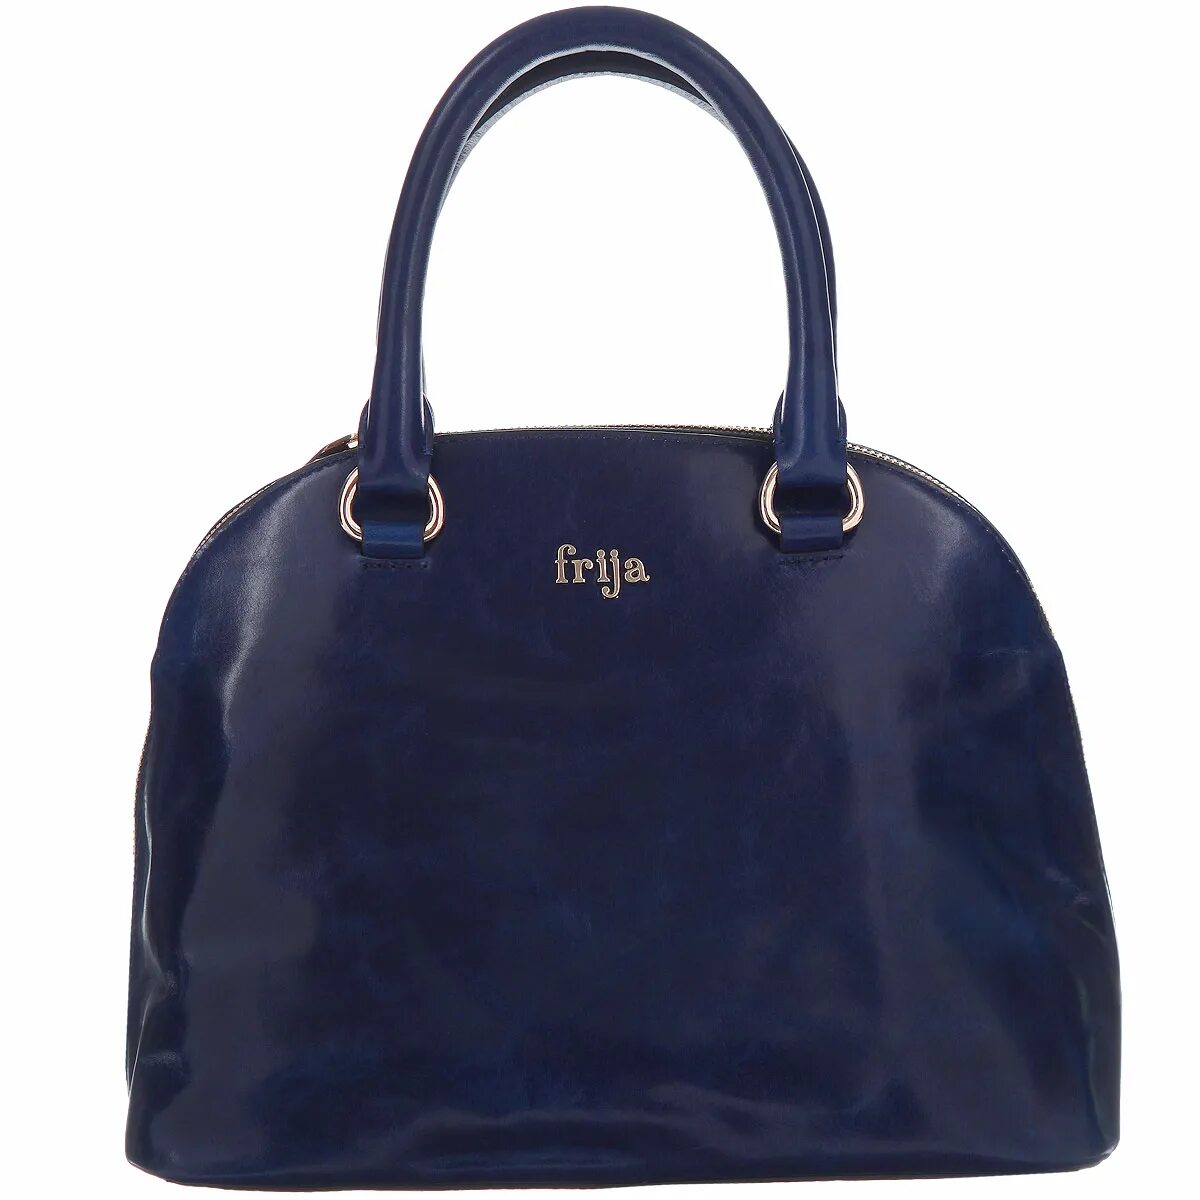 Сумки Frija. Озон сумки женские. Дамские сумки на Озоне. Сумка синяя женская.